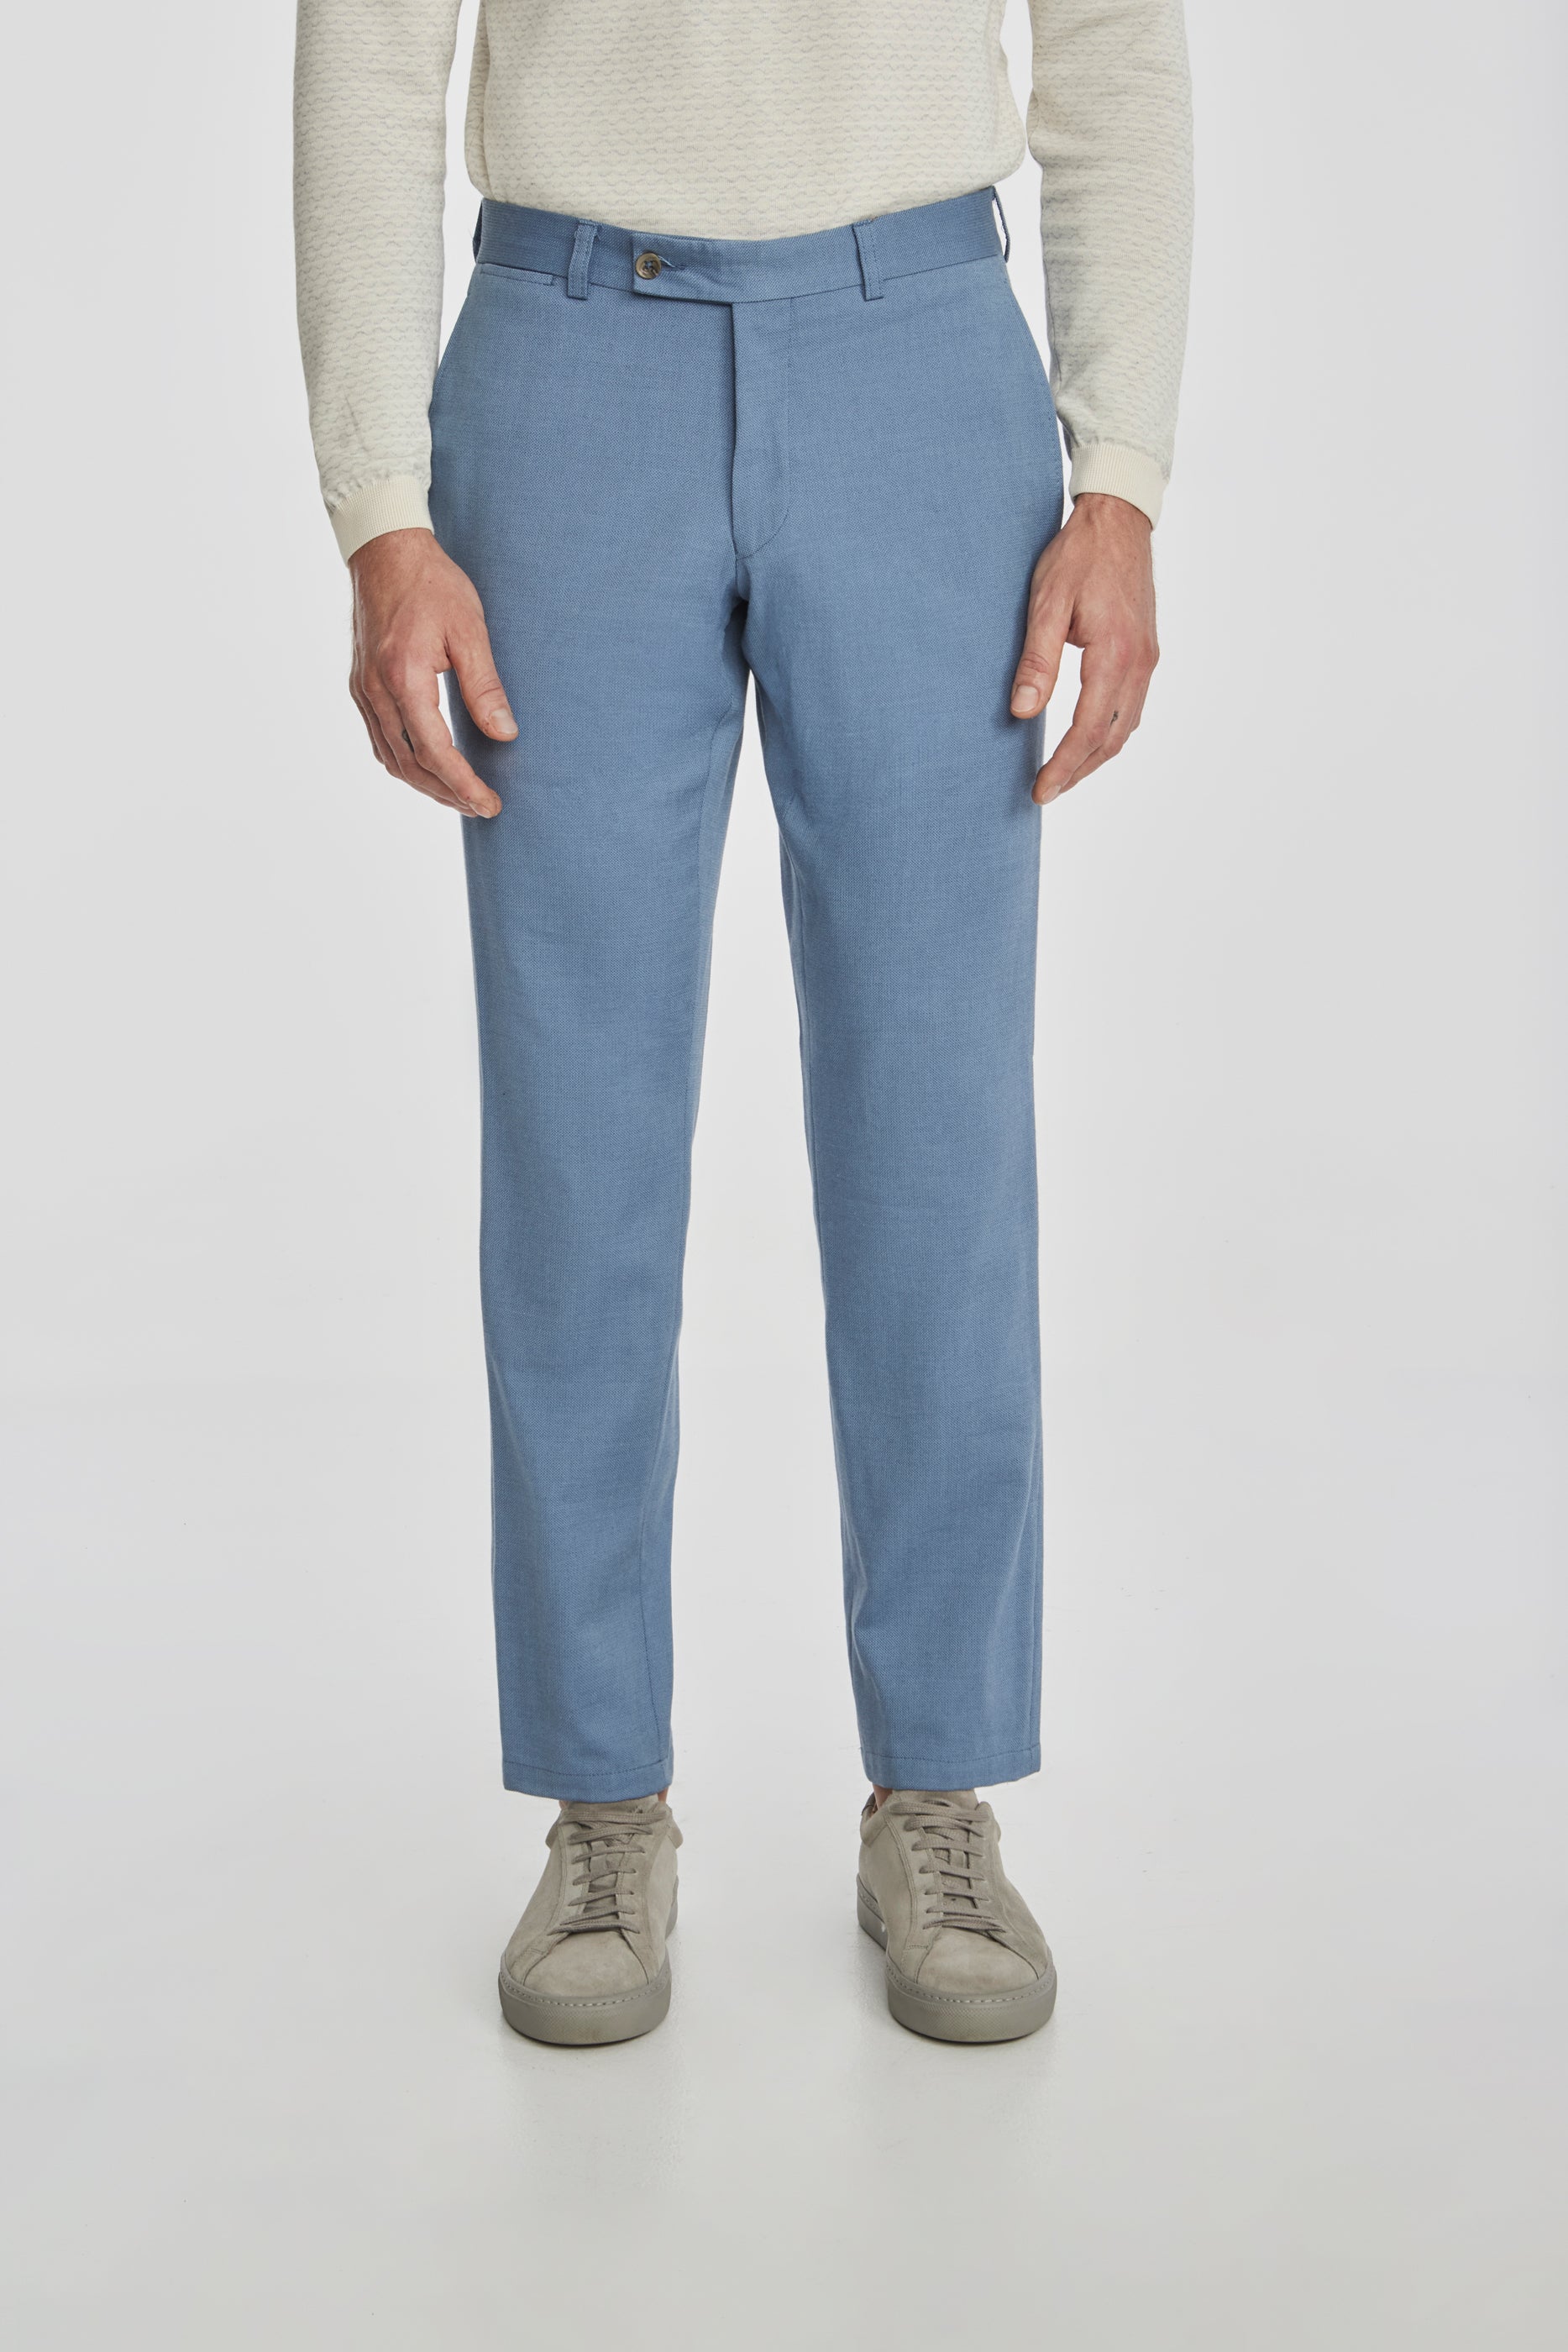 Vue alternative Palmer pantalon en coton texturé et en laine extensible, bleu clair